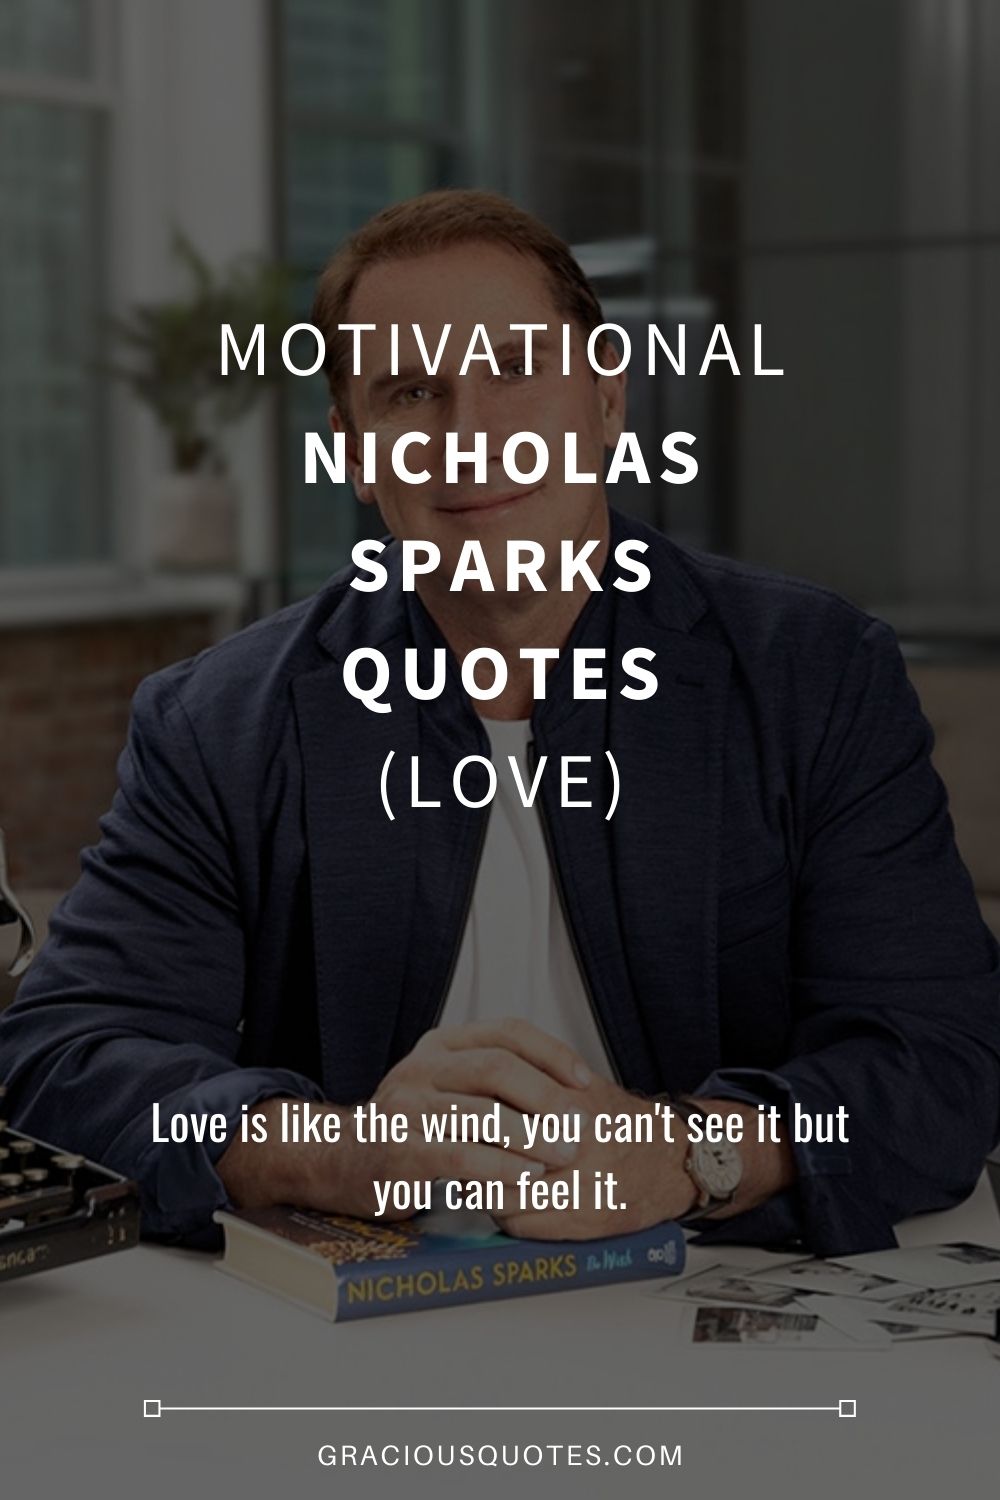 Motivational Nicholas Sparks Quotes (LOVE) - Gracious Quotes